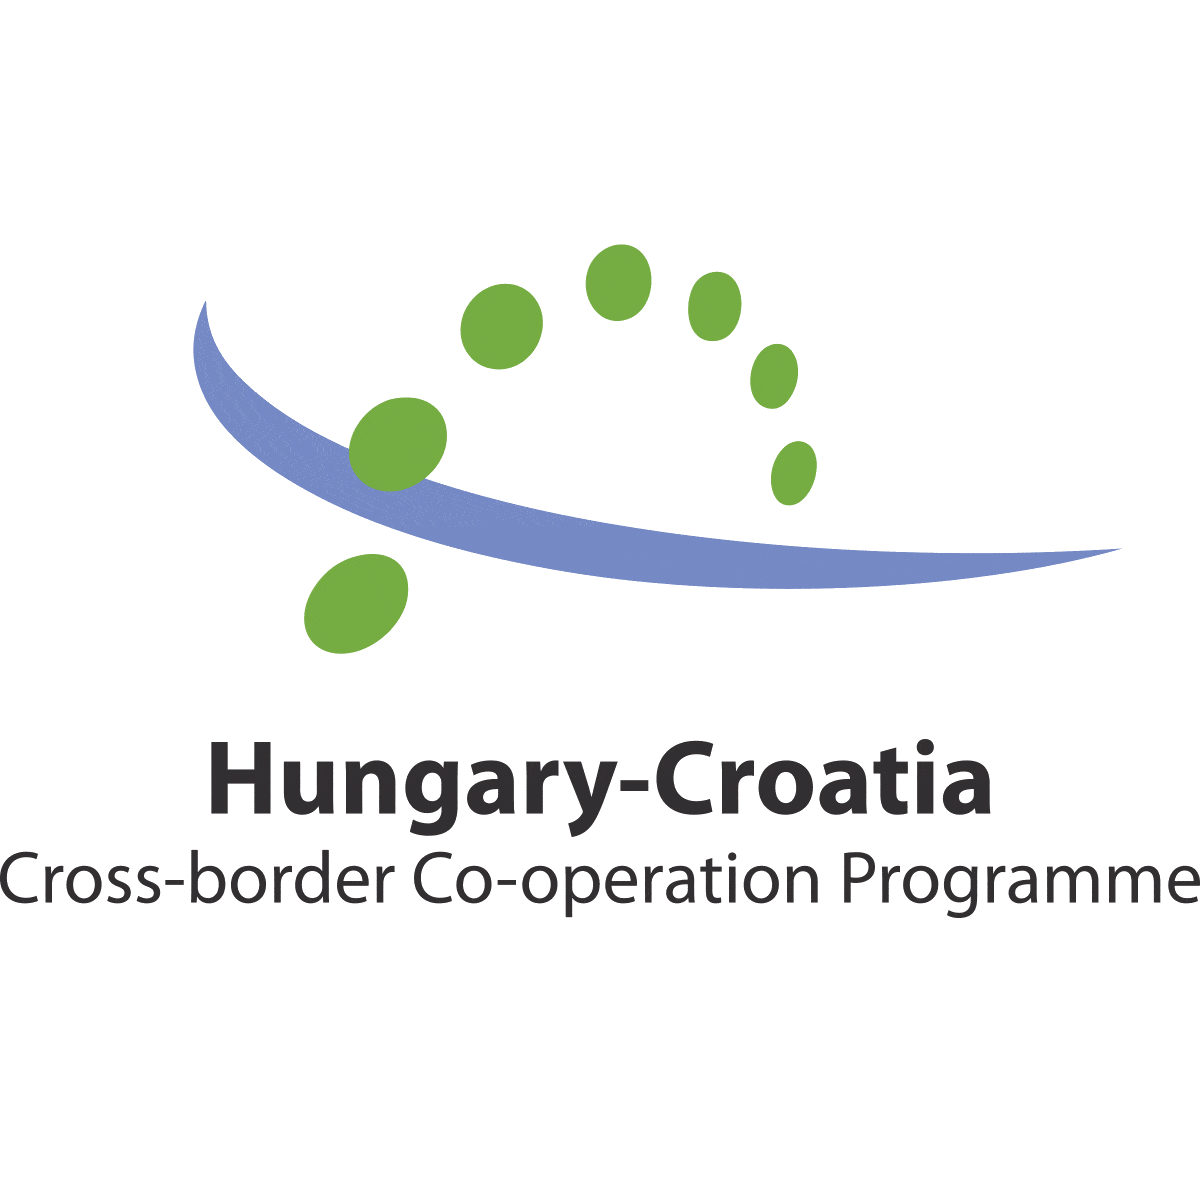 Hungary-Croatia